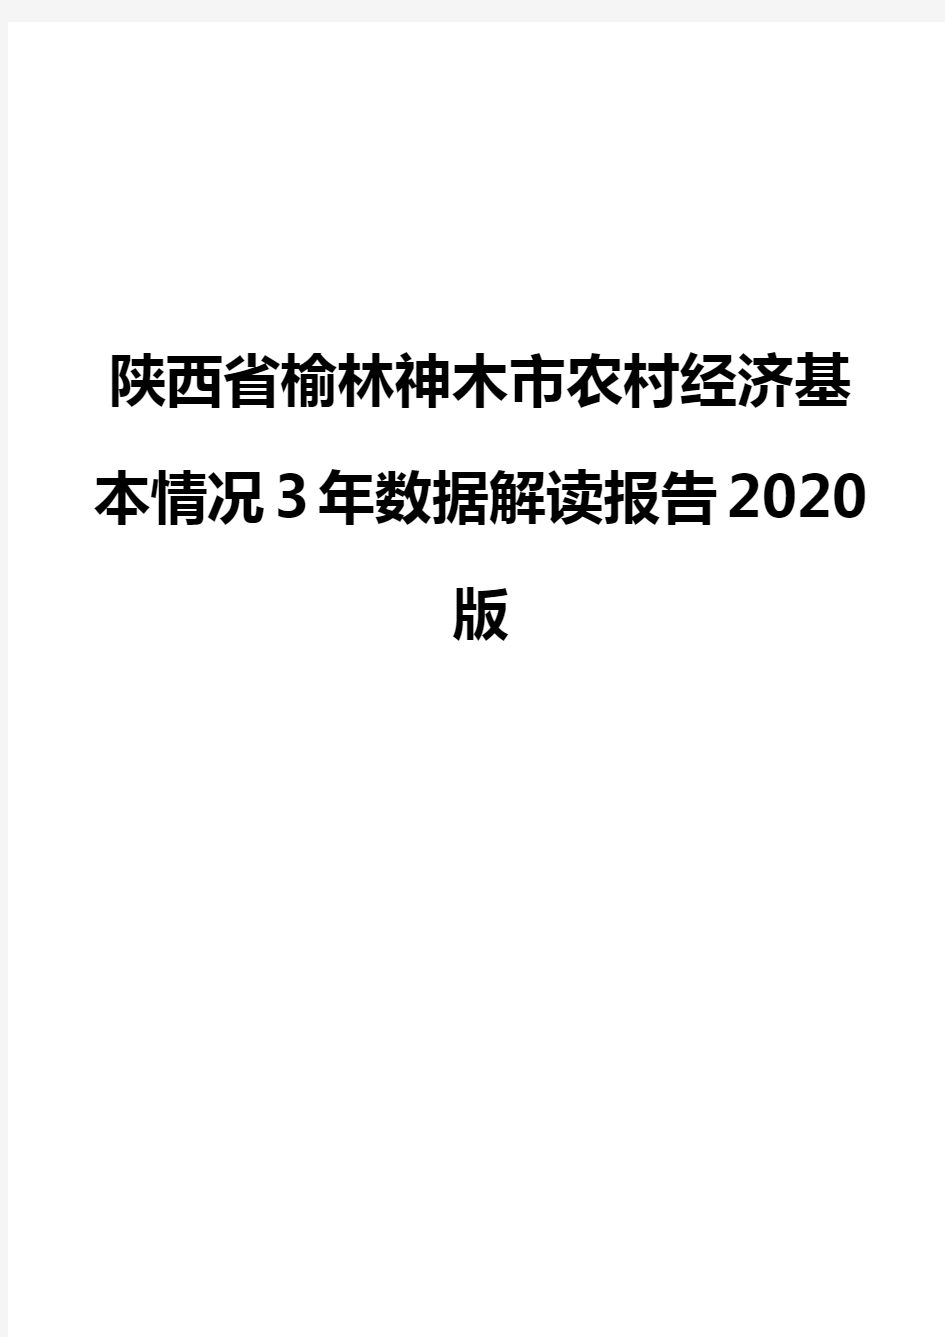 陕西省榆林神木市农村经济基本情况3年数据解读报告2020版